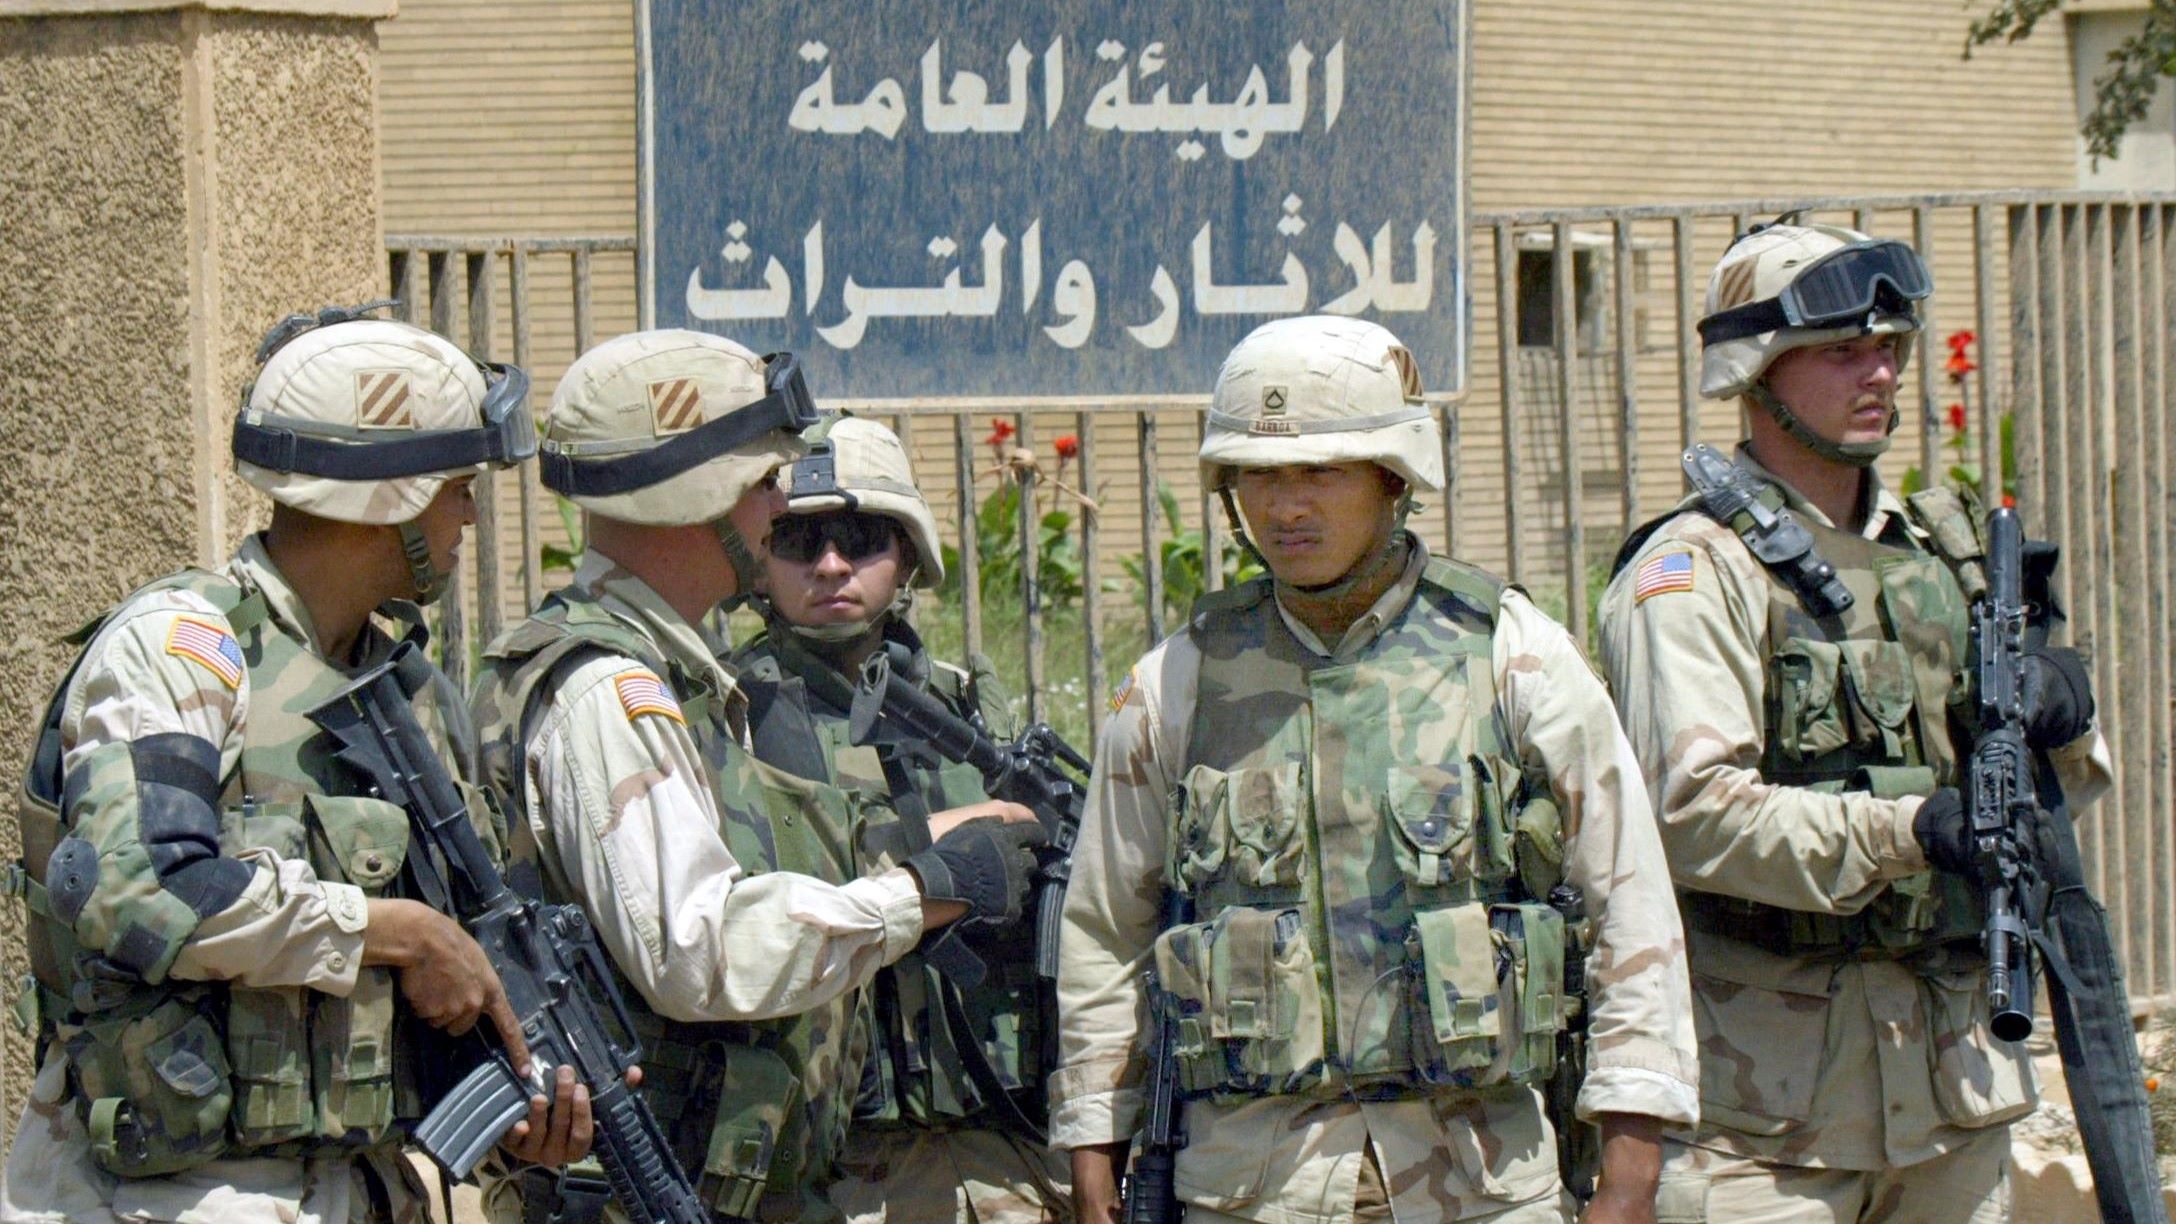 Des soldats américains montent la garde devant le Musée national de Bagdad, le 16 avril 2003 (AFP)